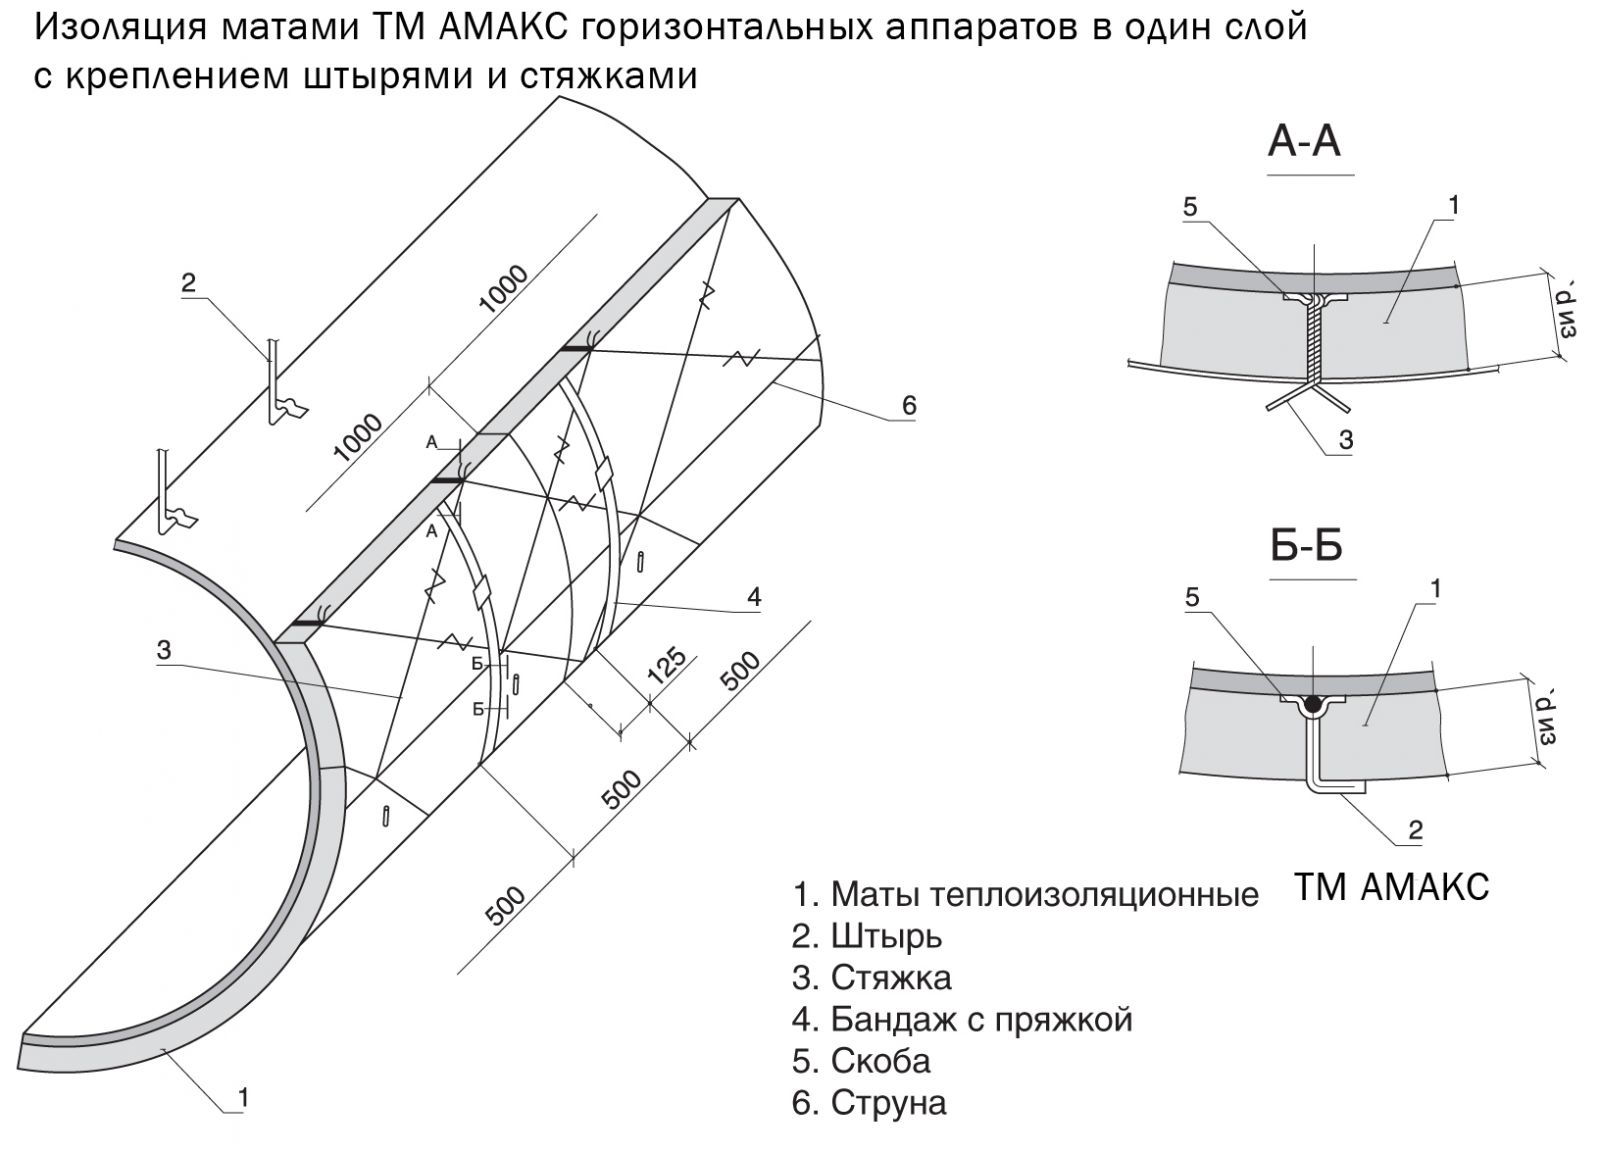 Изоляция матами АМАКС горизонтальных аппаратов в 1 слой